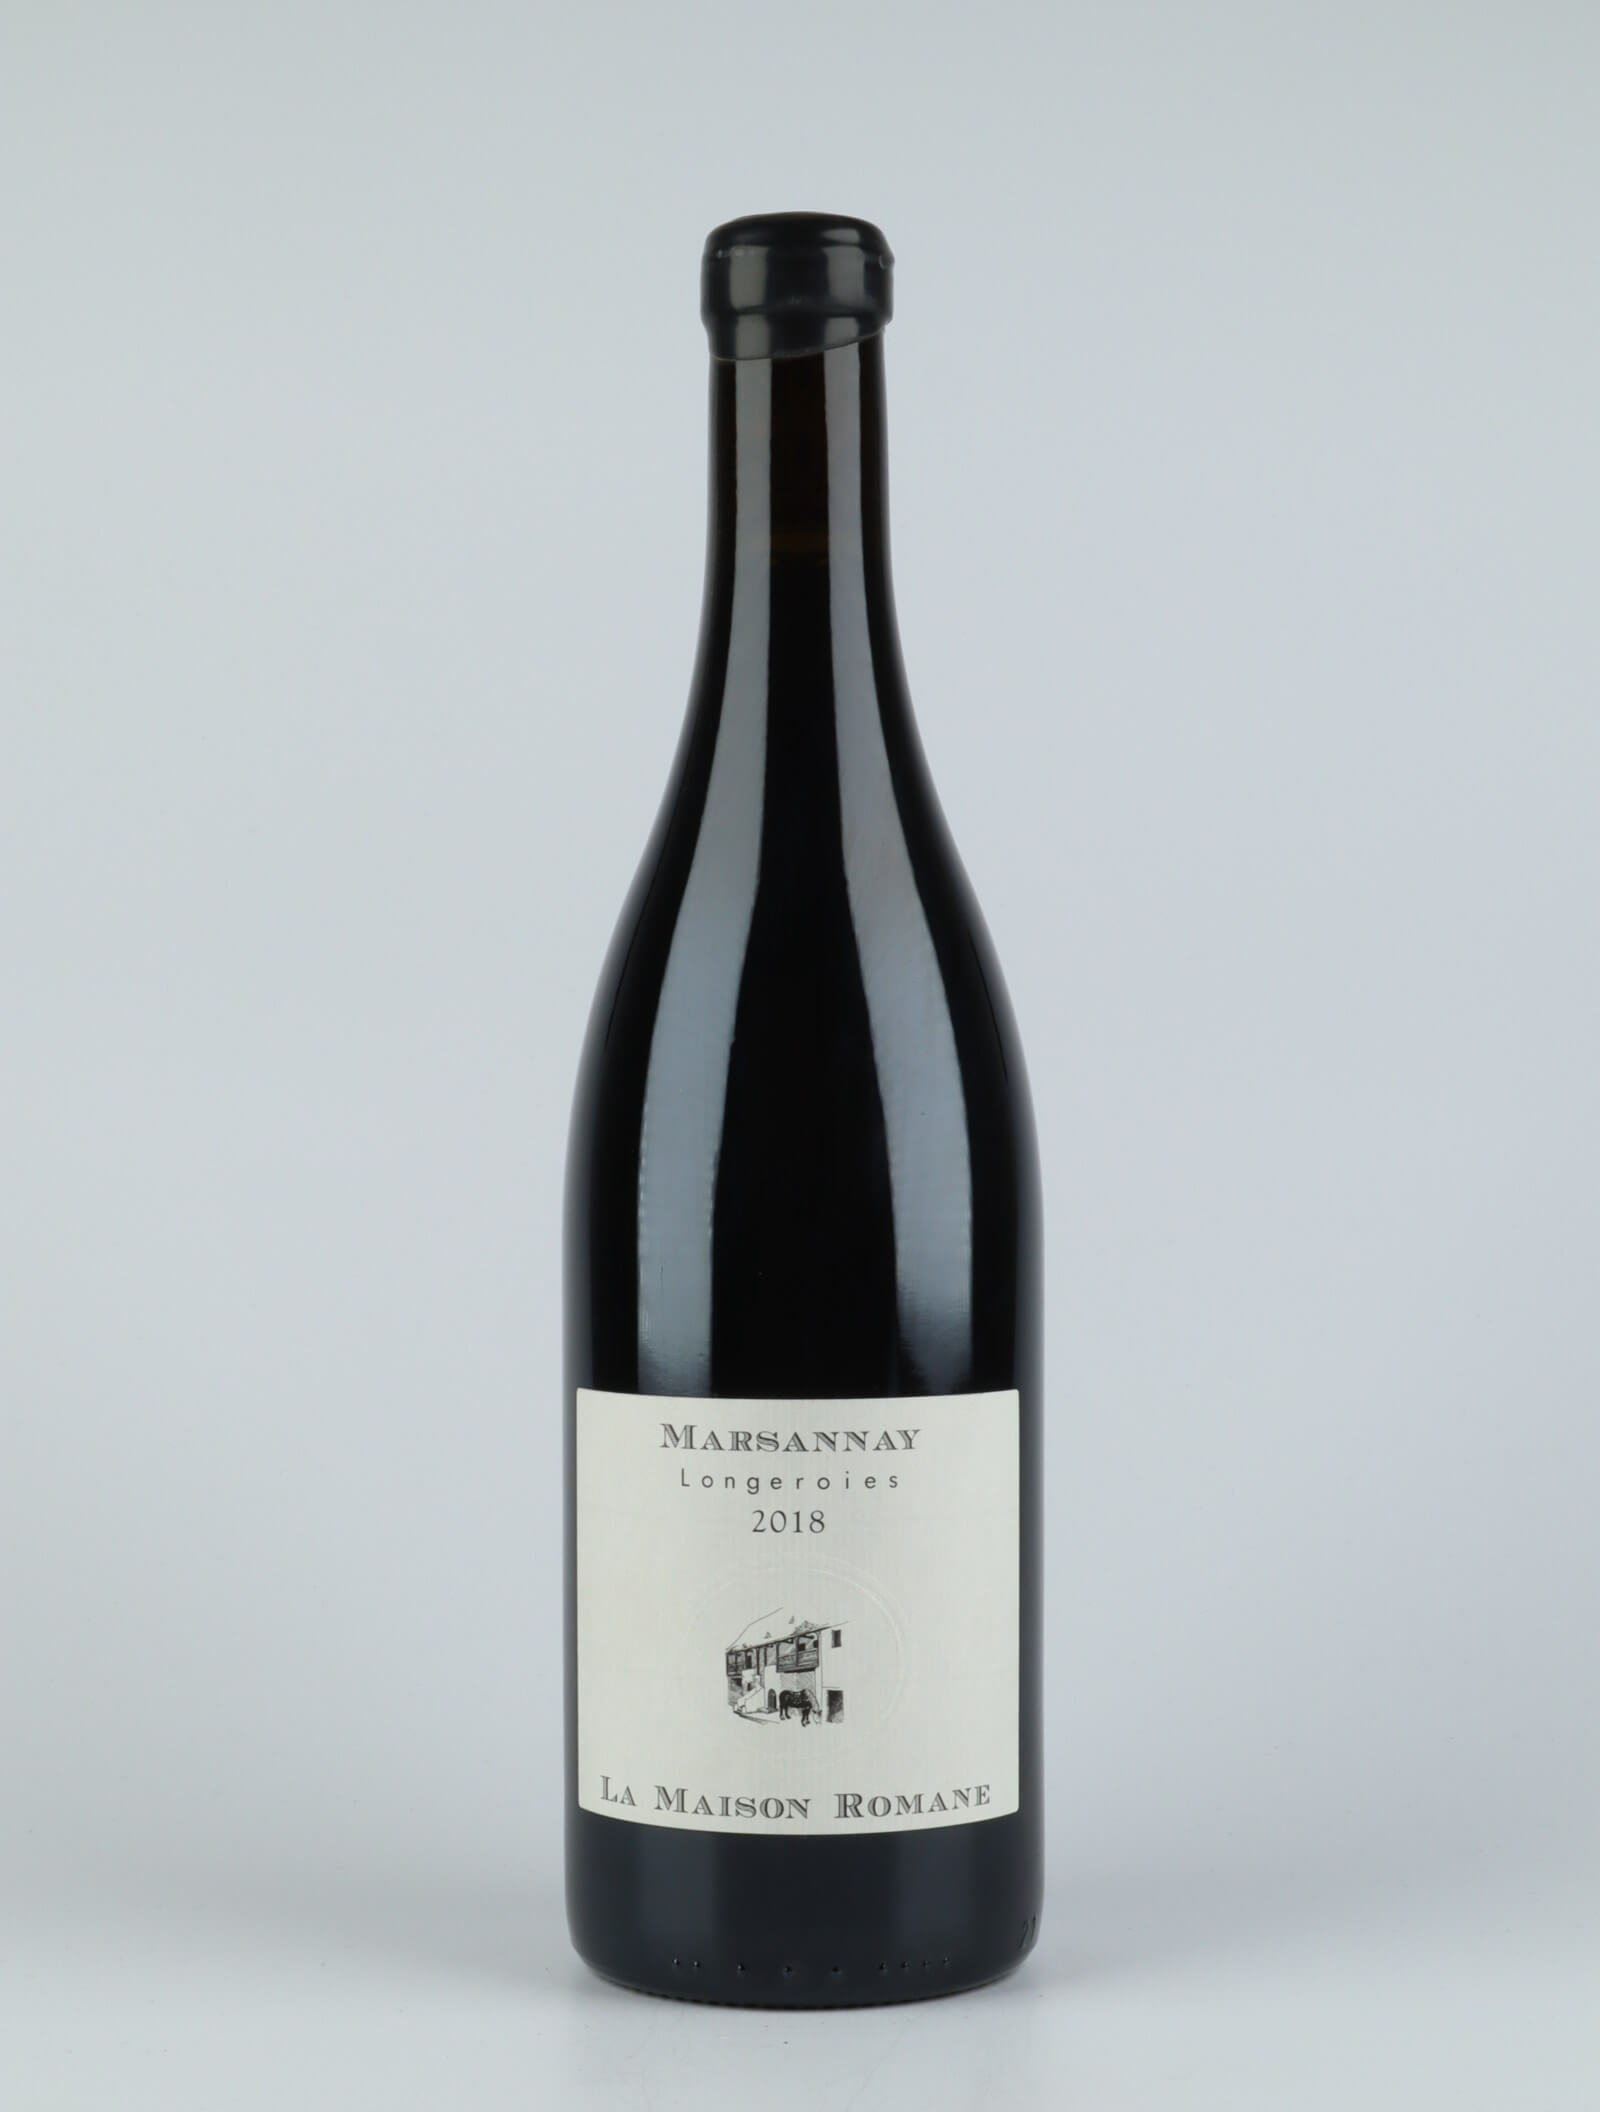 A bottle 2018 Marsannay - Longeroies Red wine from La Maison Romane, Burgundy in France